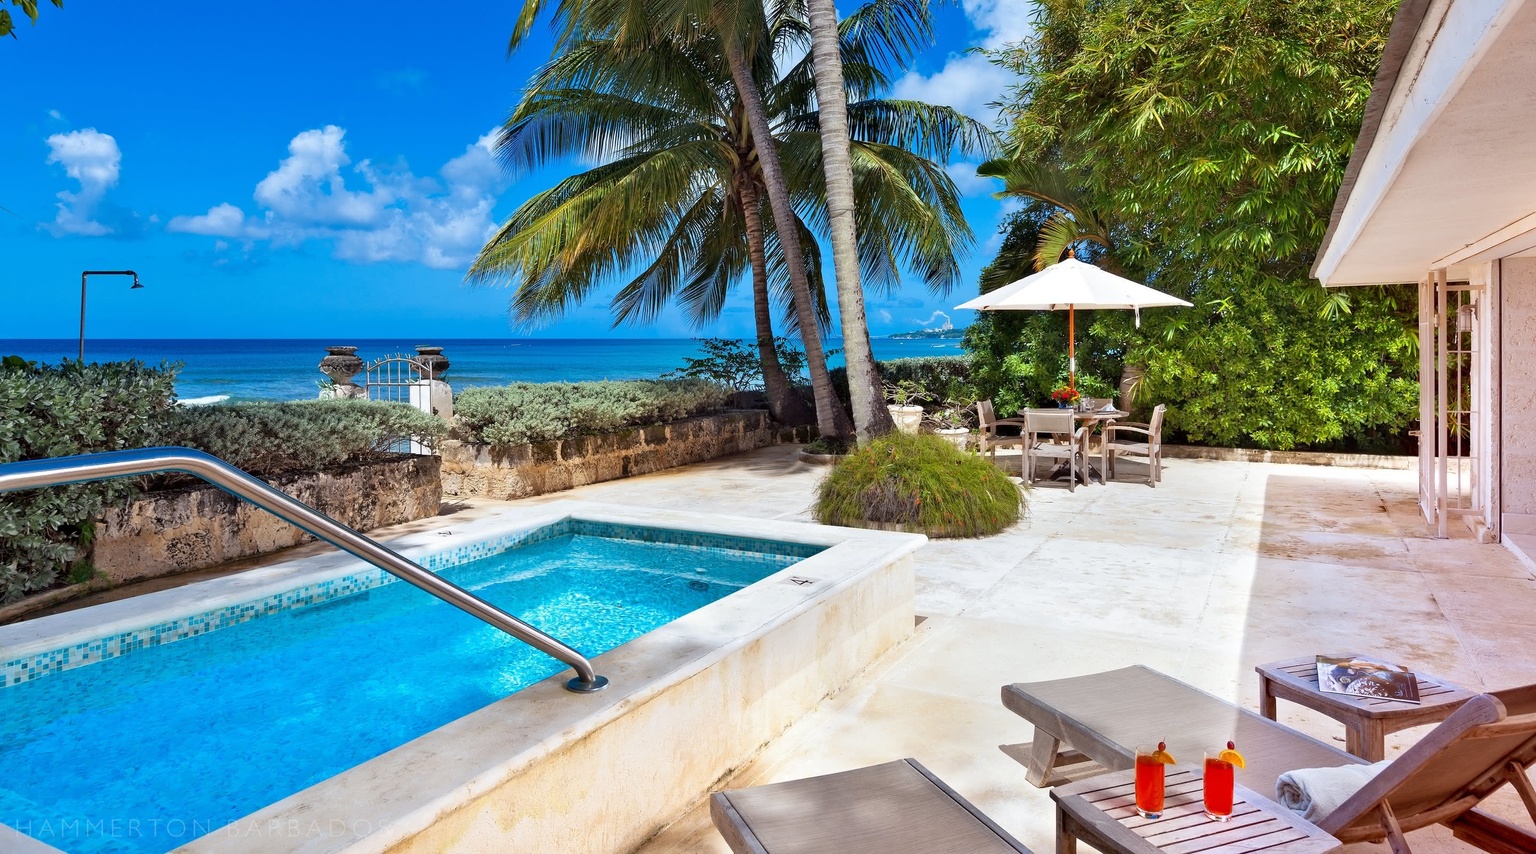 Outstanding Barbados Villas by Oliver Messel – Hammerton Barbados